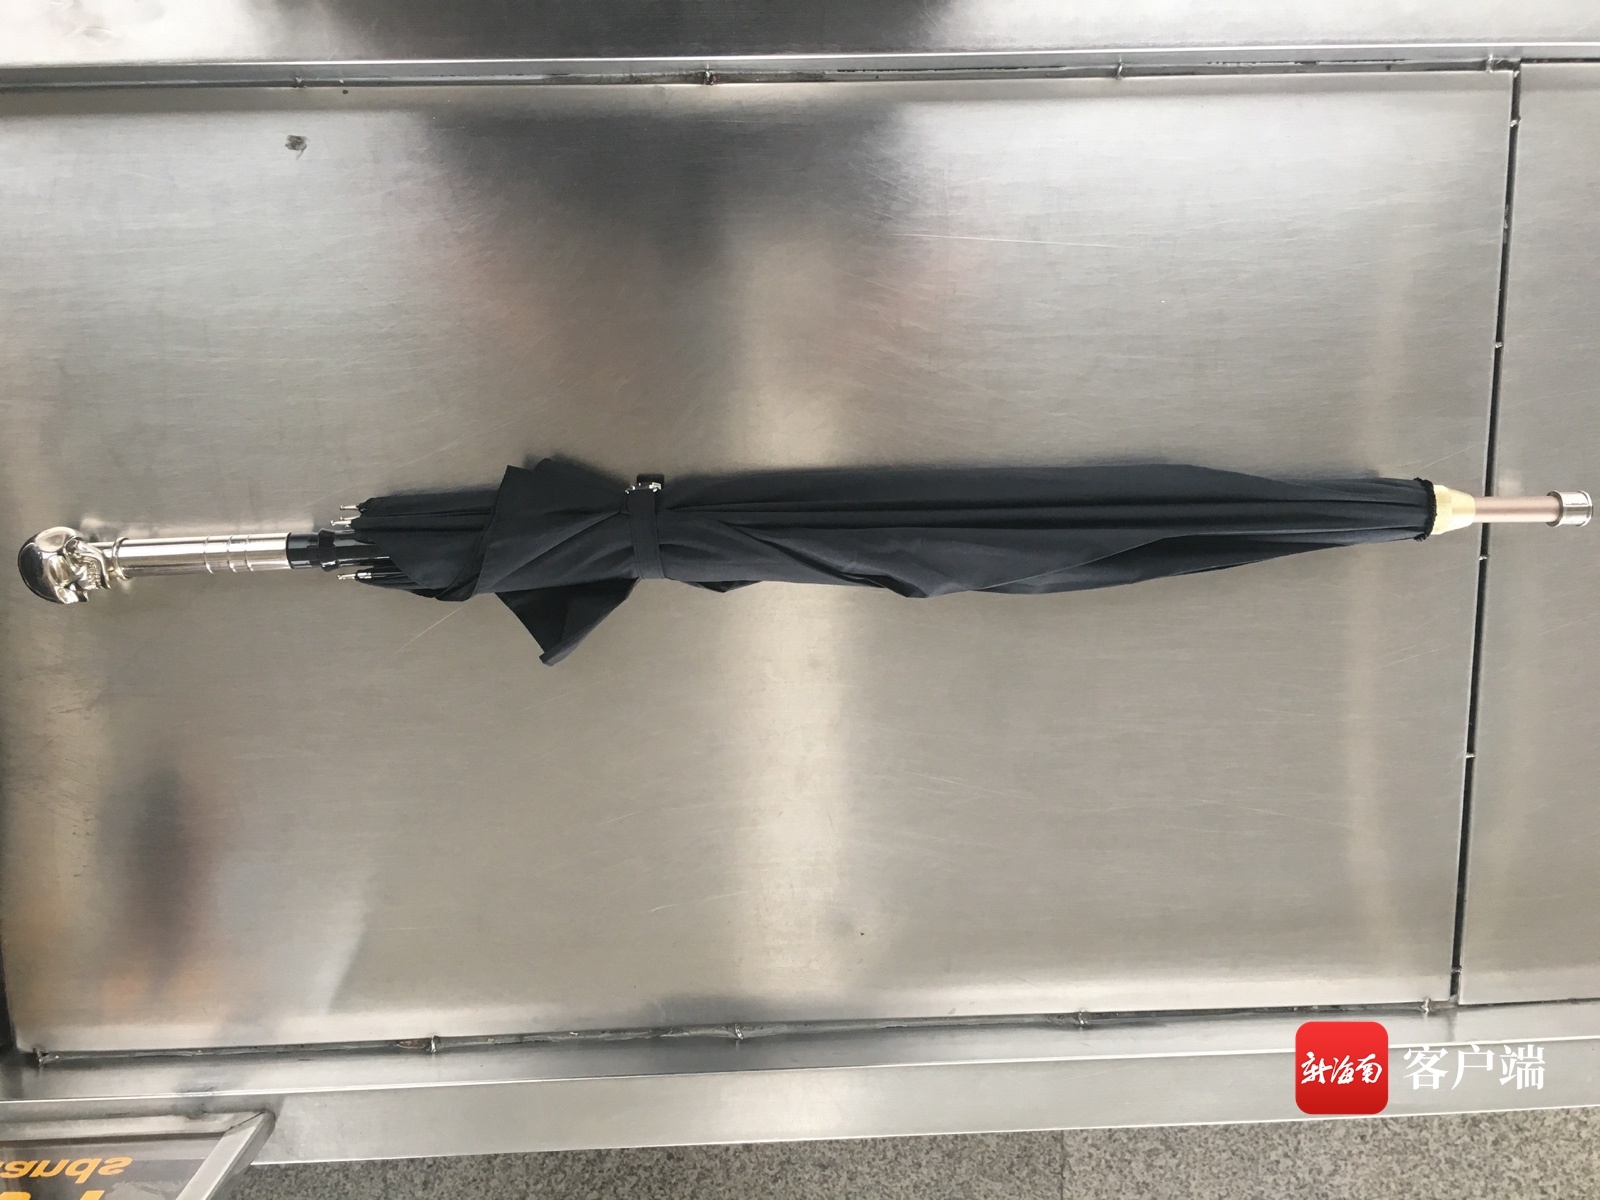 三亚机场安检查获“剑伞” 涉事旅客已被控制